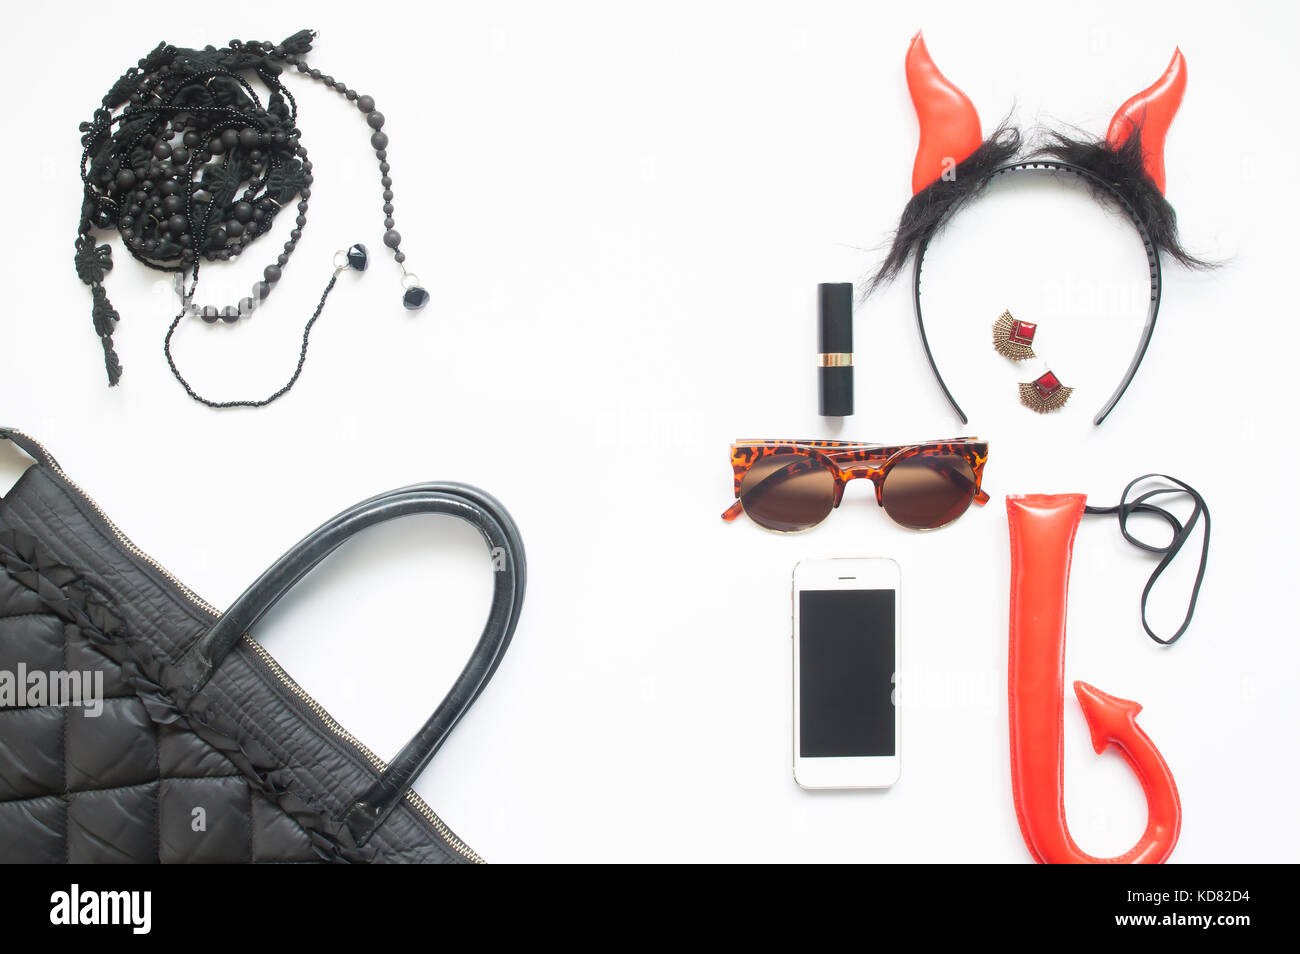 Creative laici piana di halloween fashion impostato su sfondo bianco, accessori donna in rosso e nero con lo smartphone, Festa di halloween Foto Stock